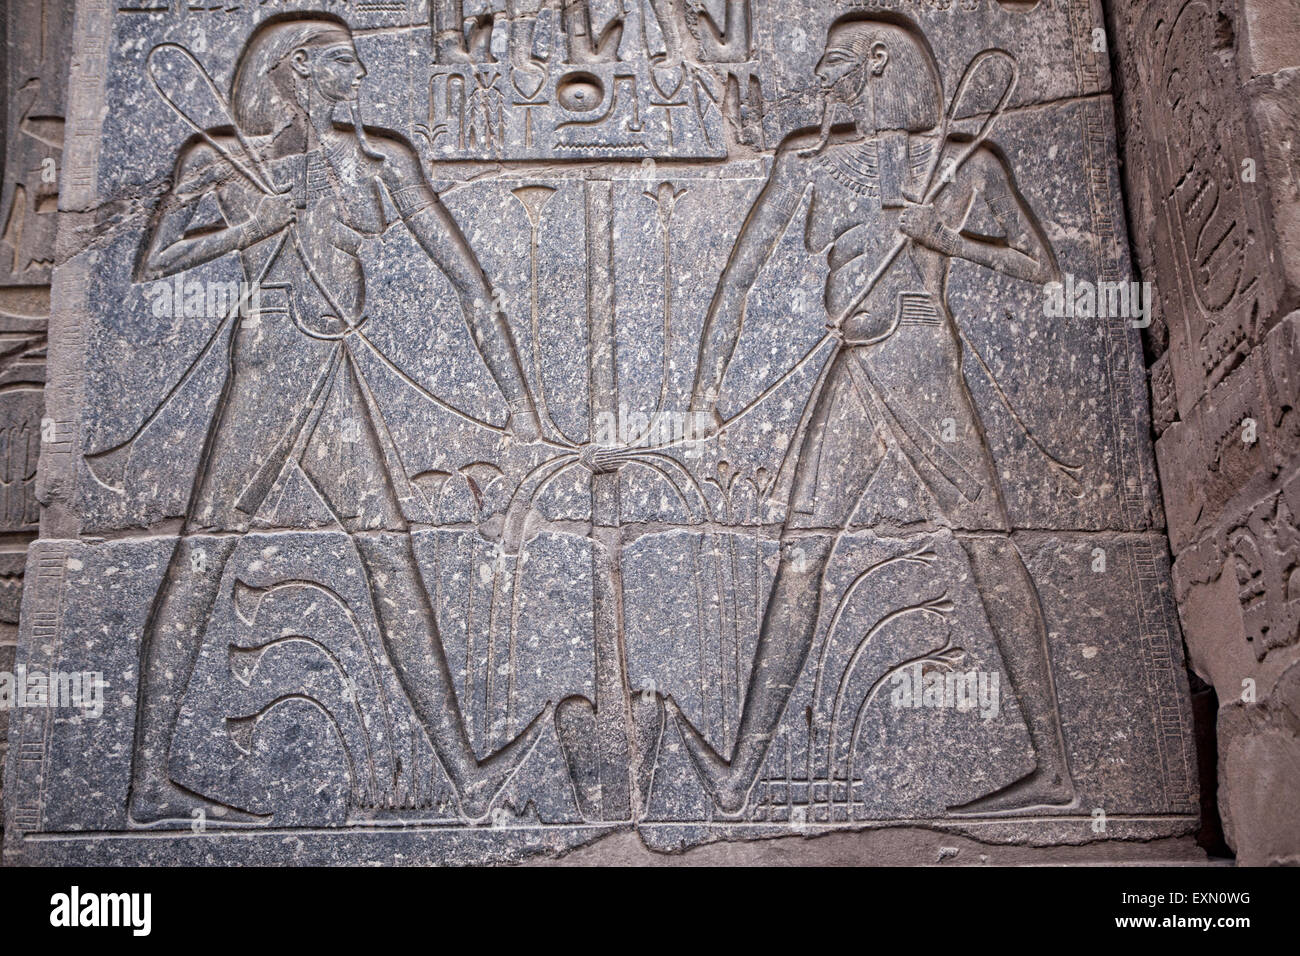 Sculture Antiche sulle colonne all'interno del tempio di Idfu in Egitto. Foto Stock